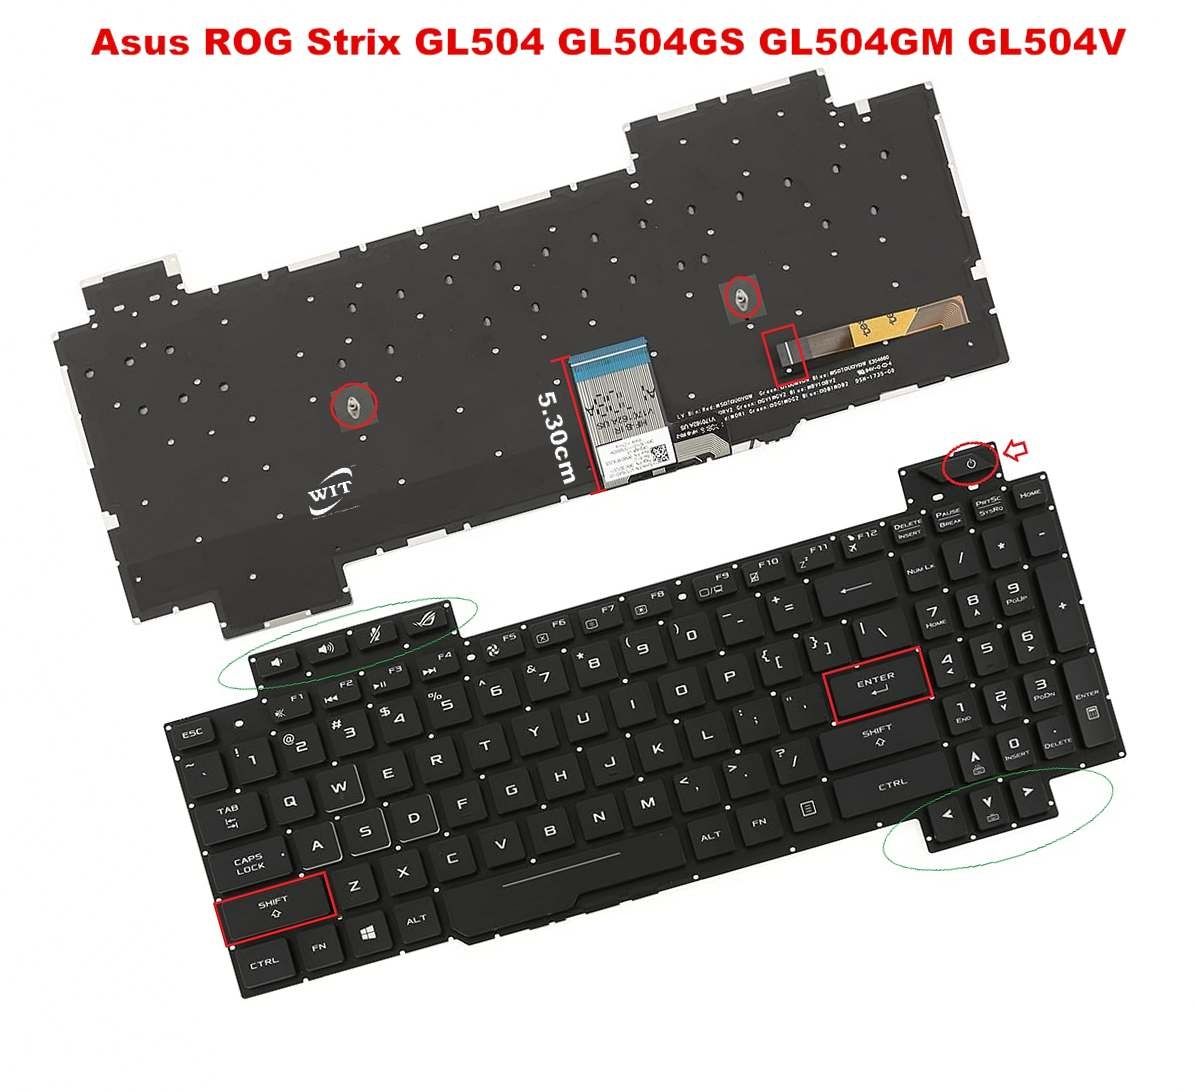 Thay bàn phím Laptop ASUS ROG GL504 (SCAR II / Hero II)